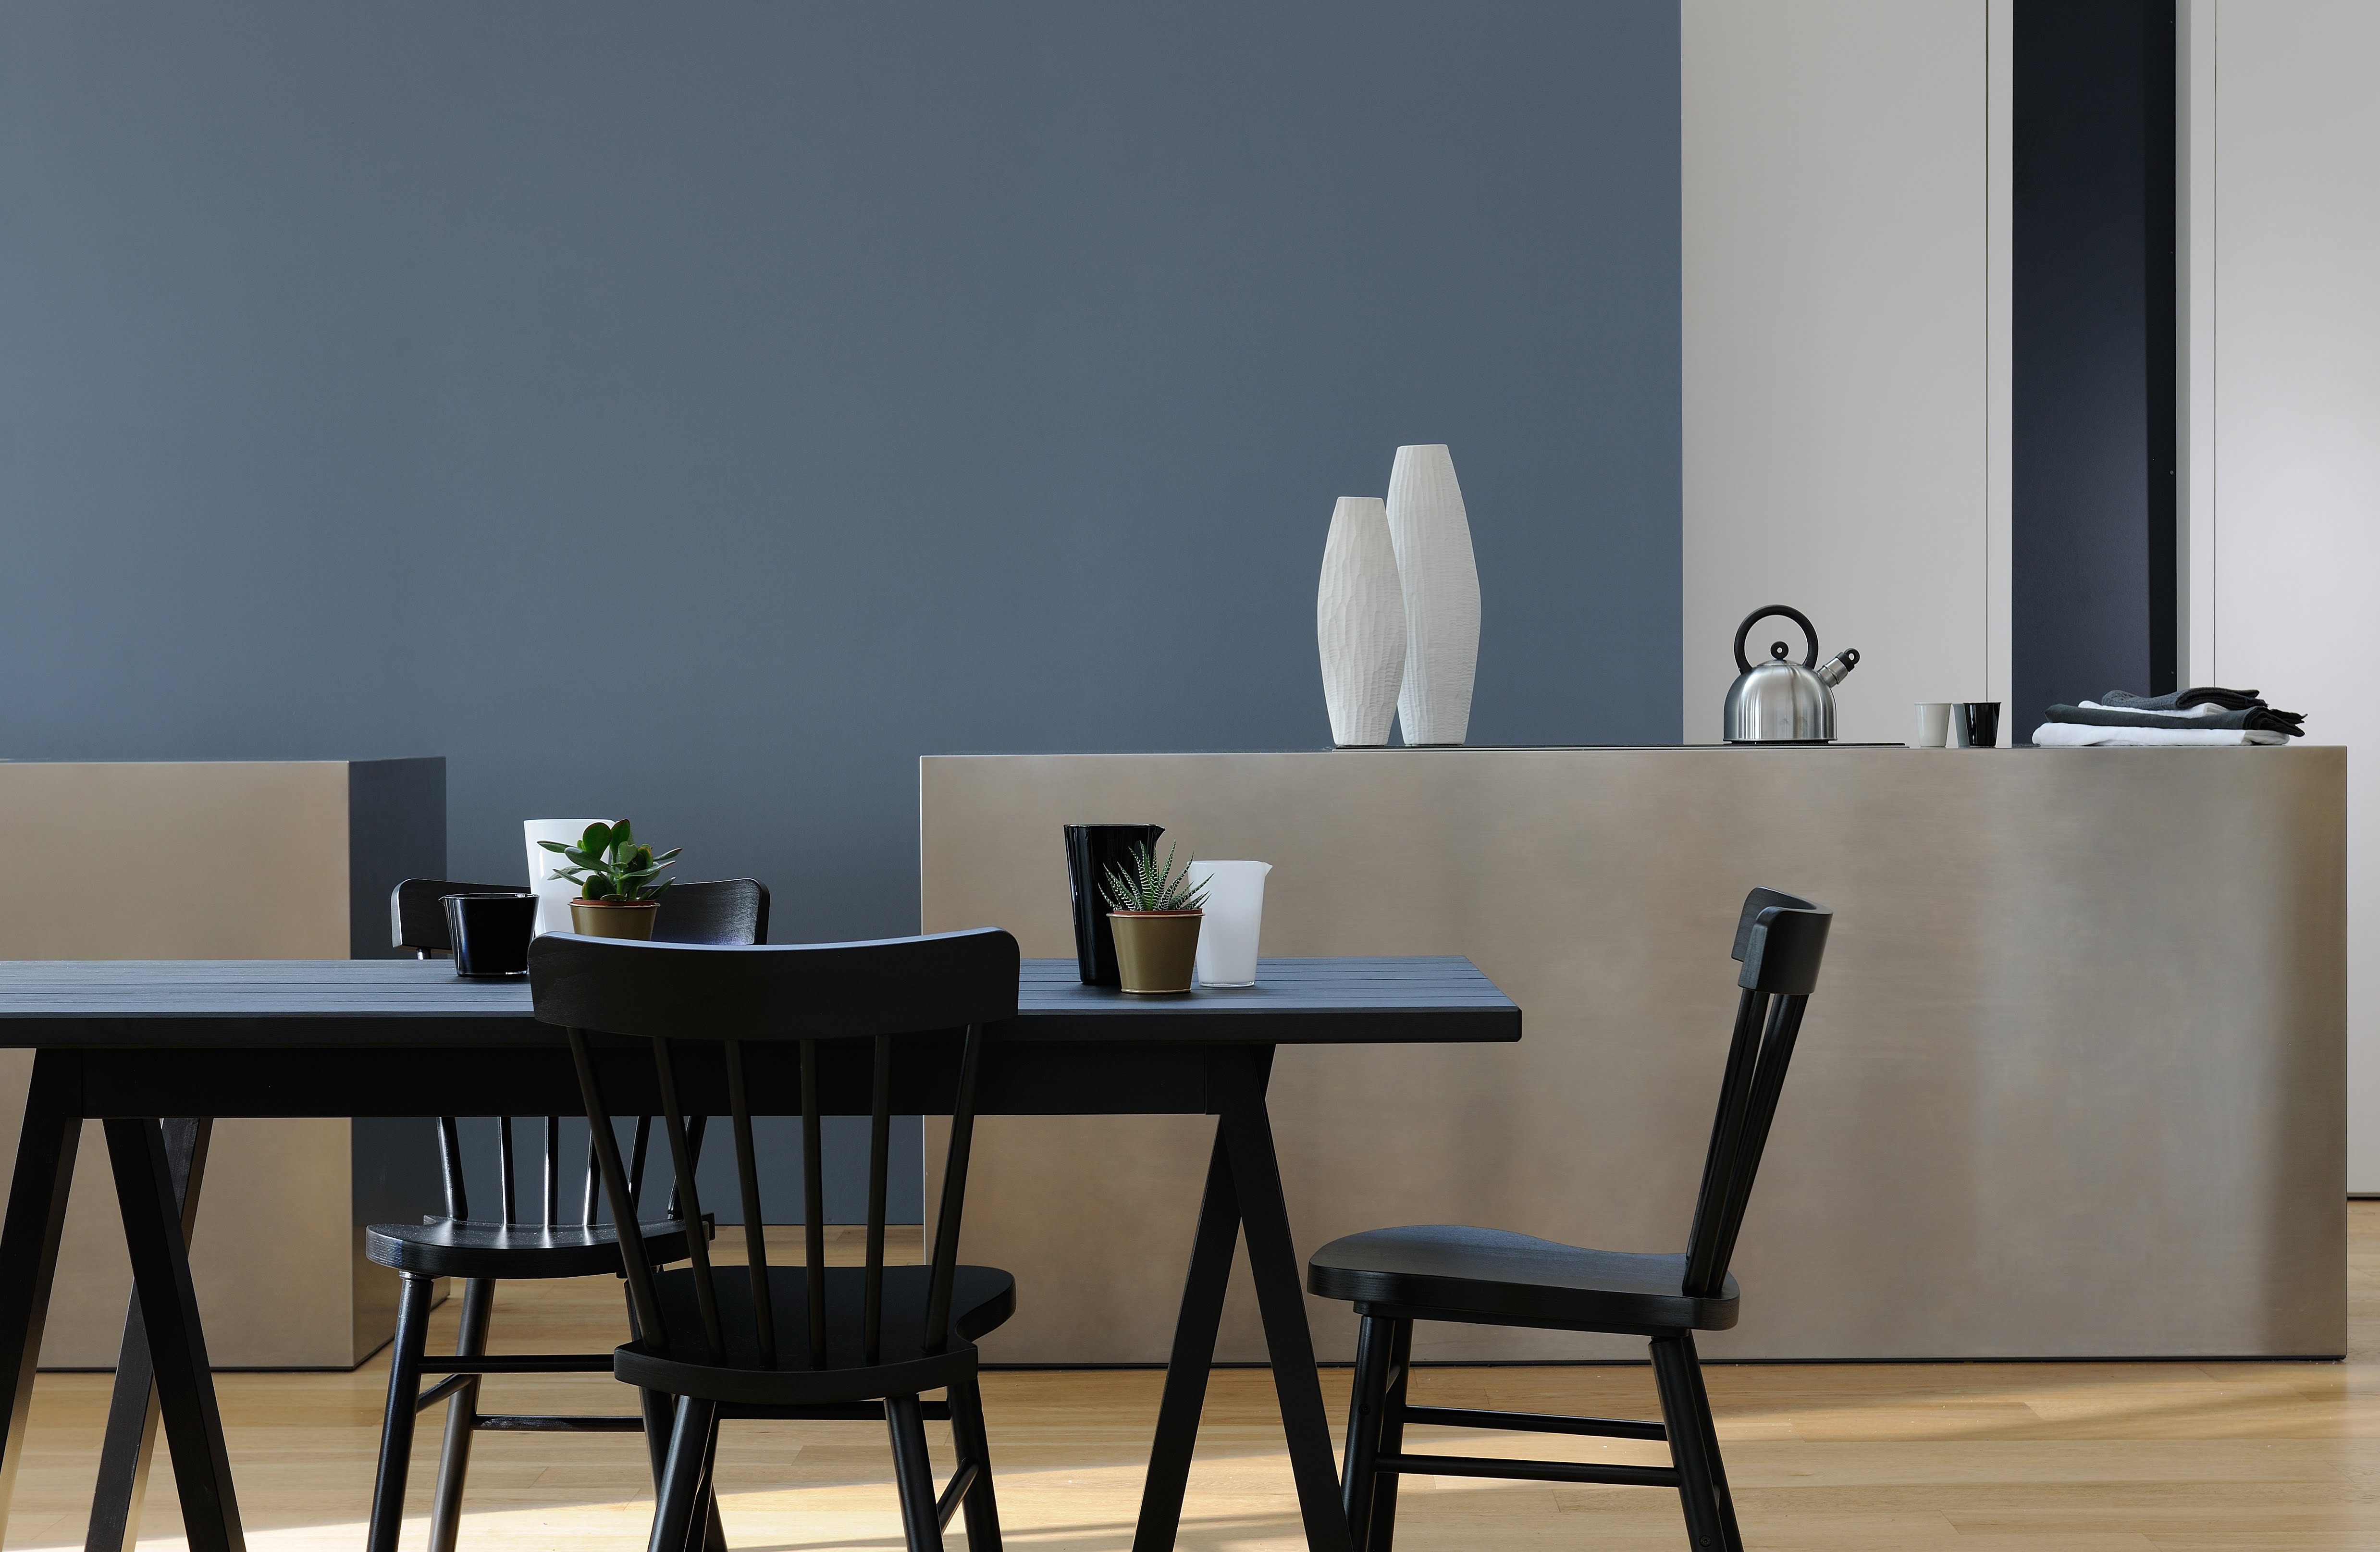 Cusine, salon ou salle à manger réalisée avec de la peinture intérieure dans les tons de gris, bleus et pastels